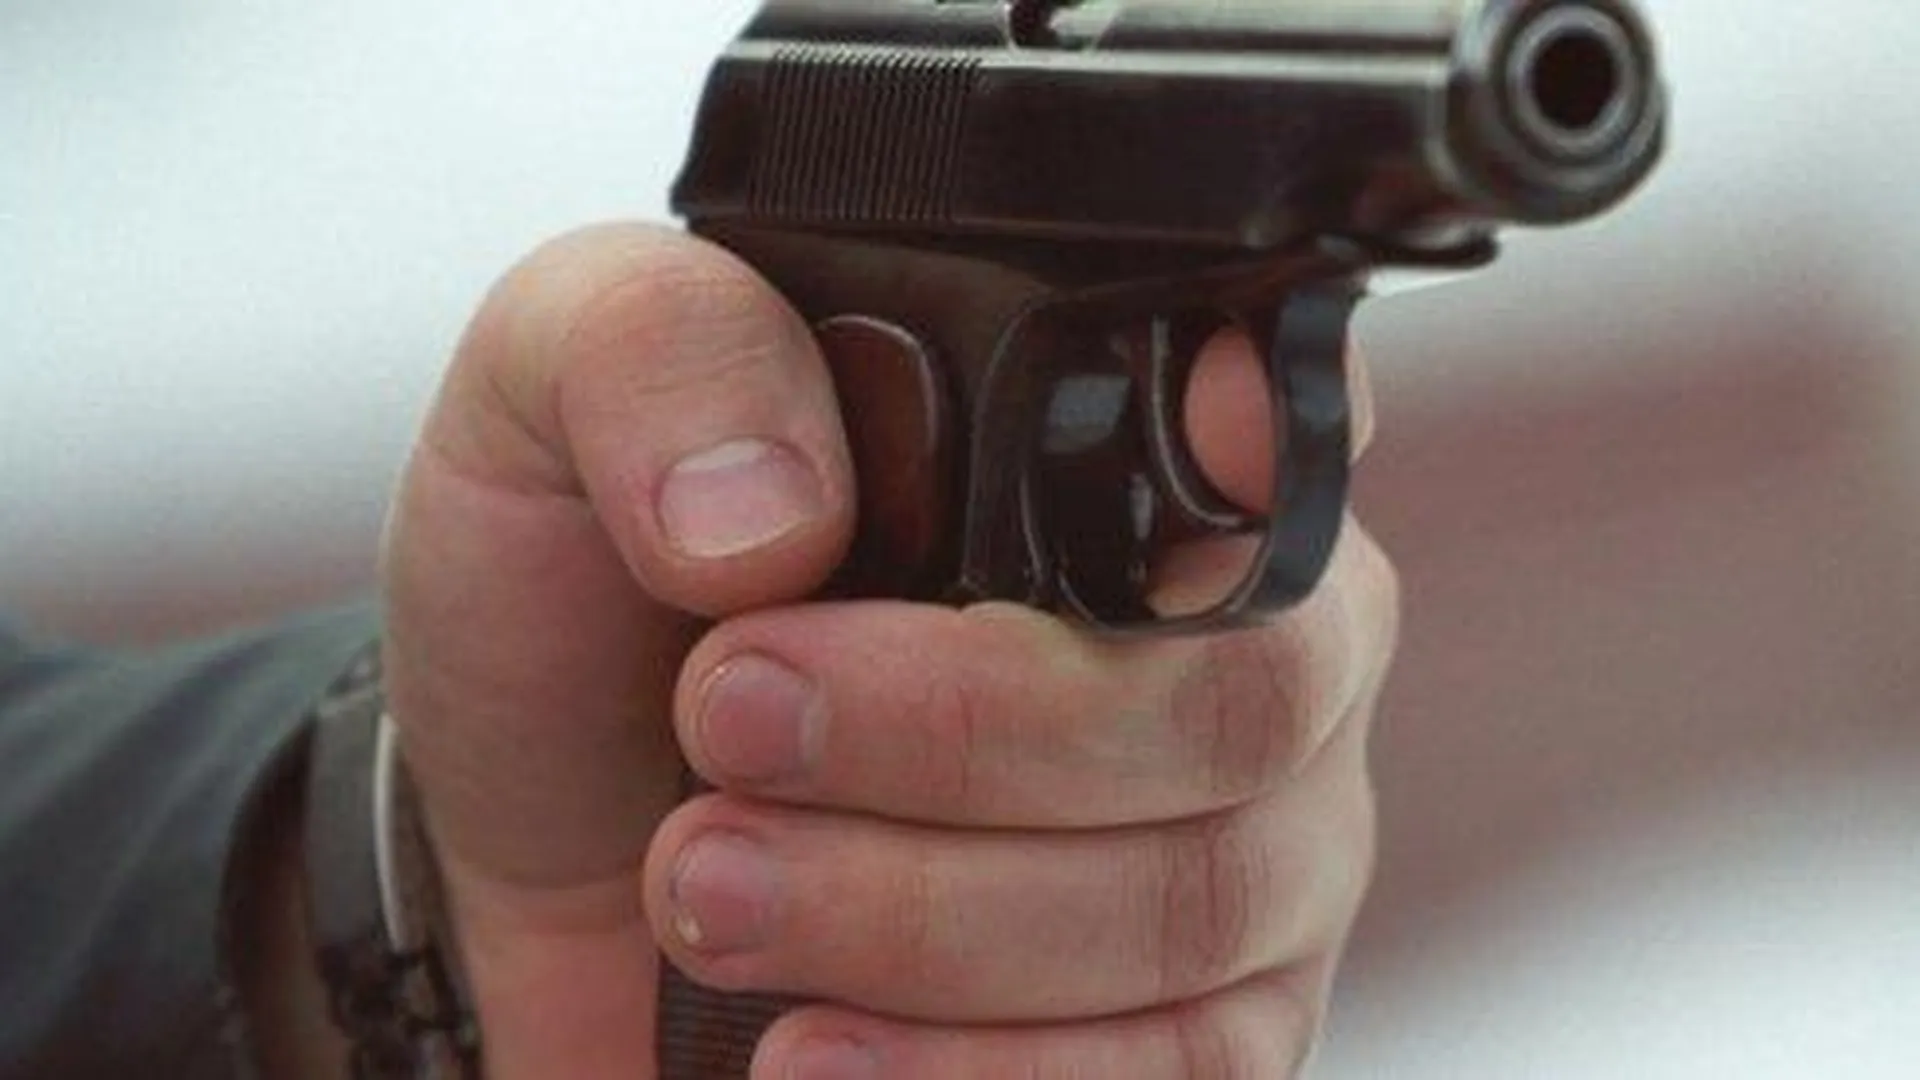 Юрист Полищук предупредила о последствиях владения пистолетом‑зажигалкой